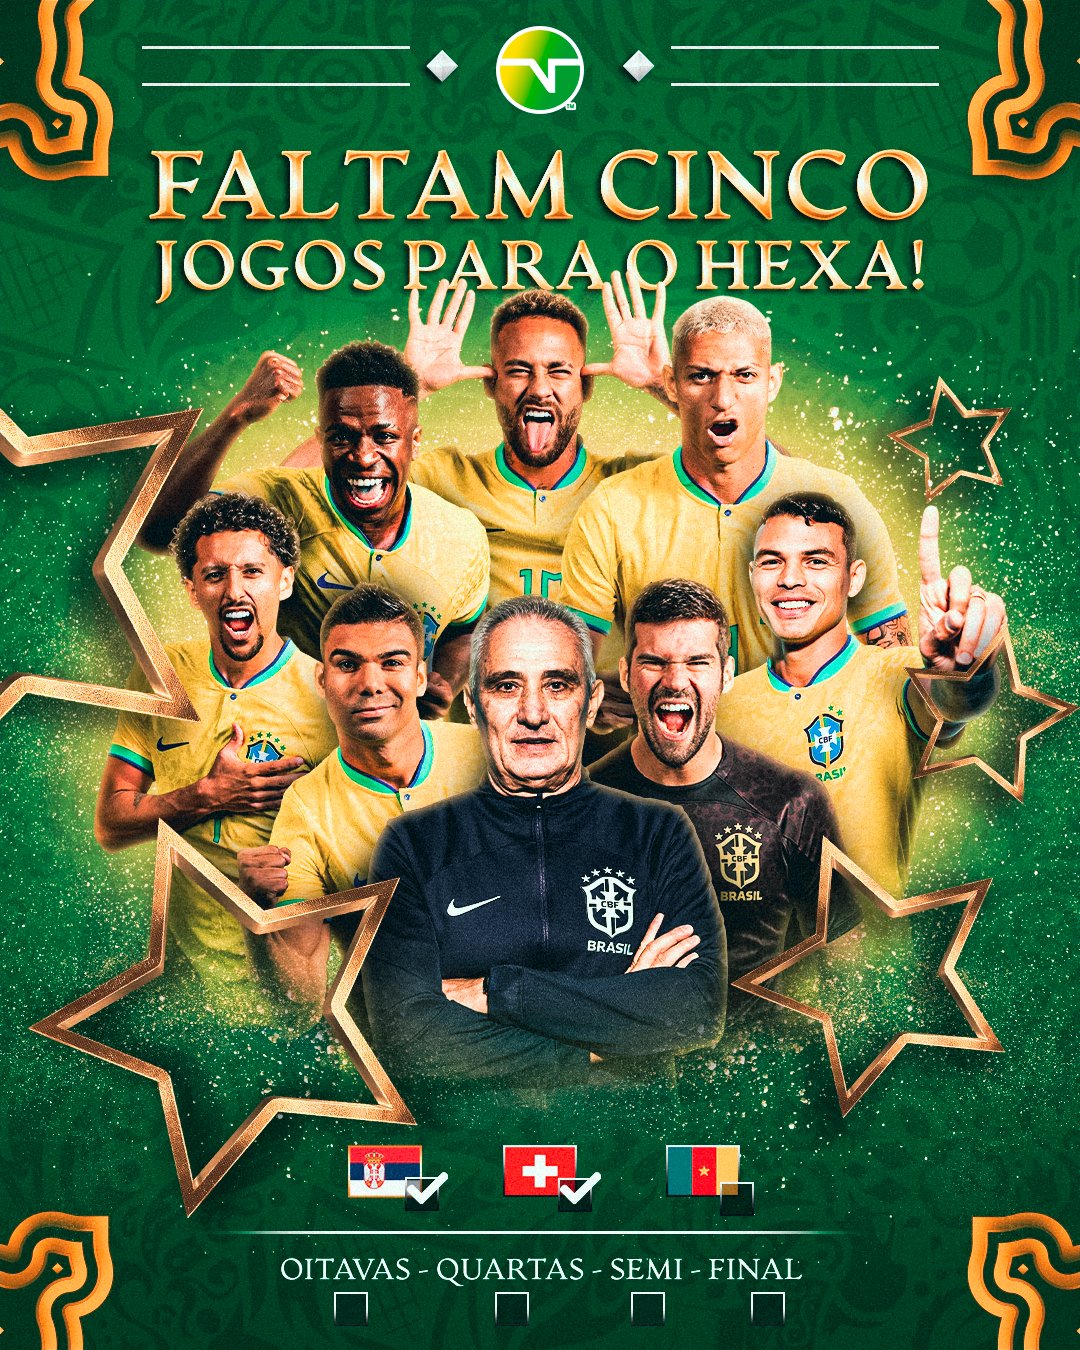 TNT Sports Brasil - O Tricolor considera a conquista como um título mundial,  apesar de não ter o reconhecimento oficial da FIFA. Inclusive, exibe a taça  em sua sede com a faixa